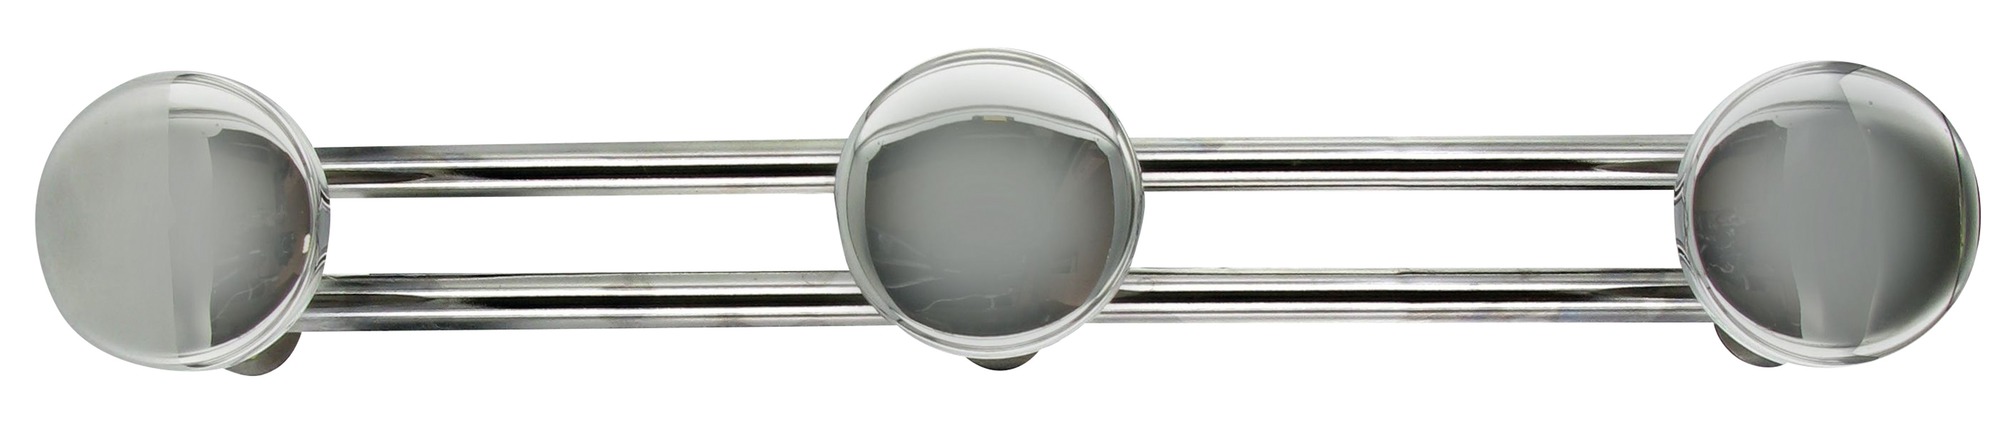 Portemanteau métallique - Cime - Chromé - 3 têtes - L. 46,5 cm